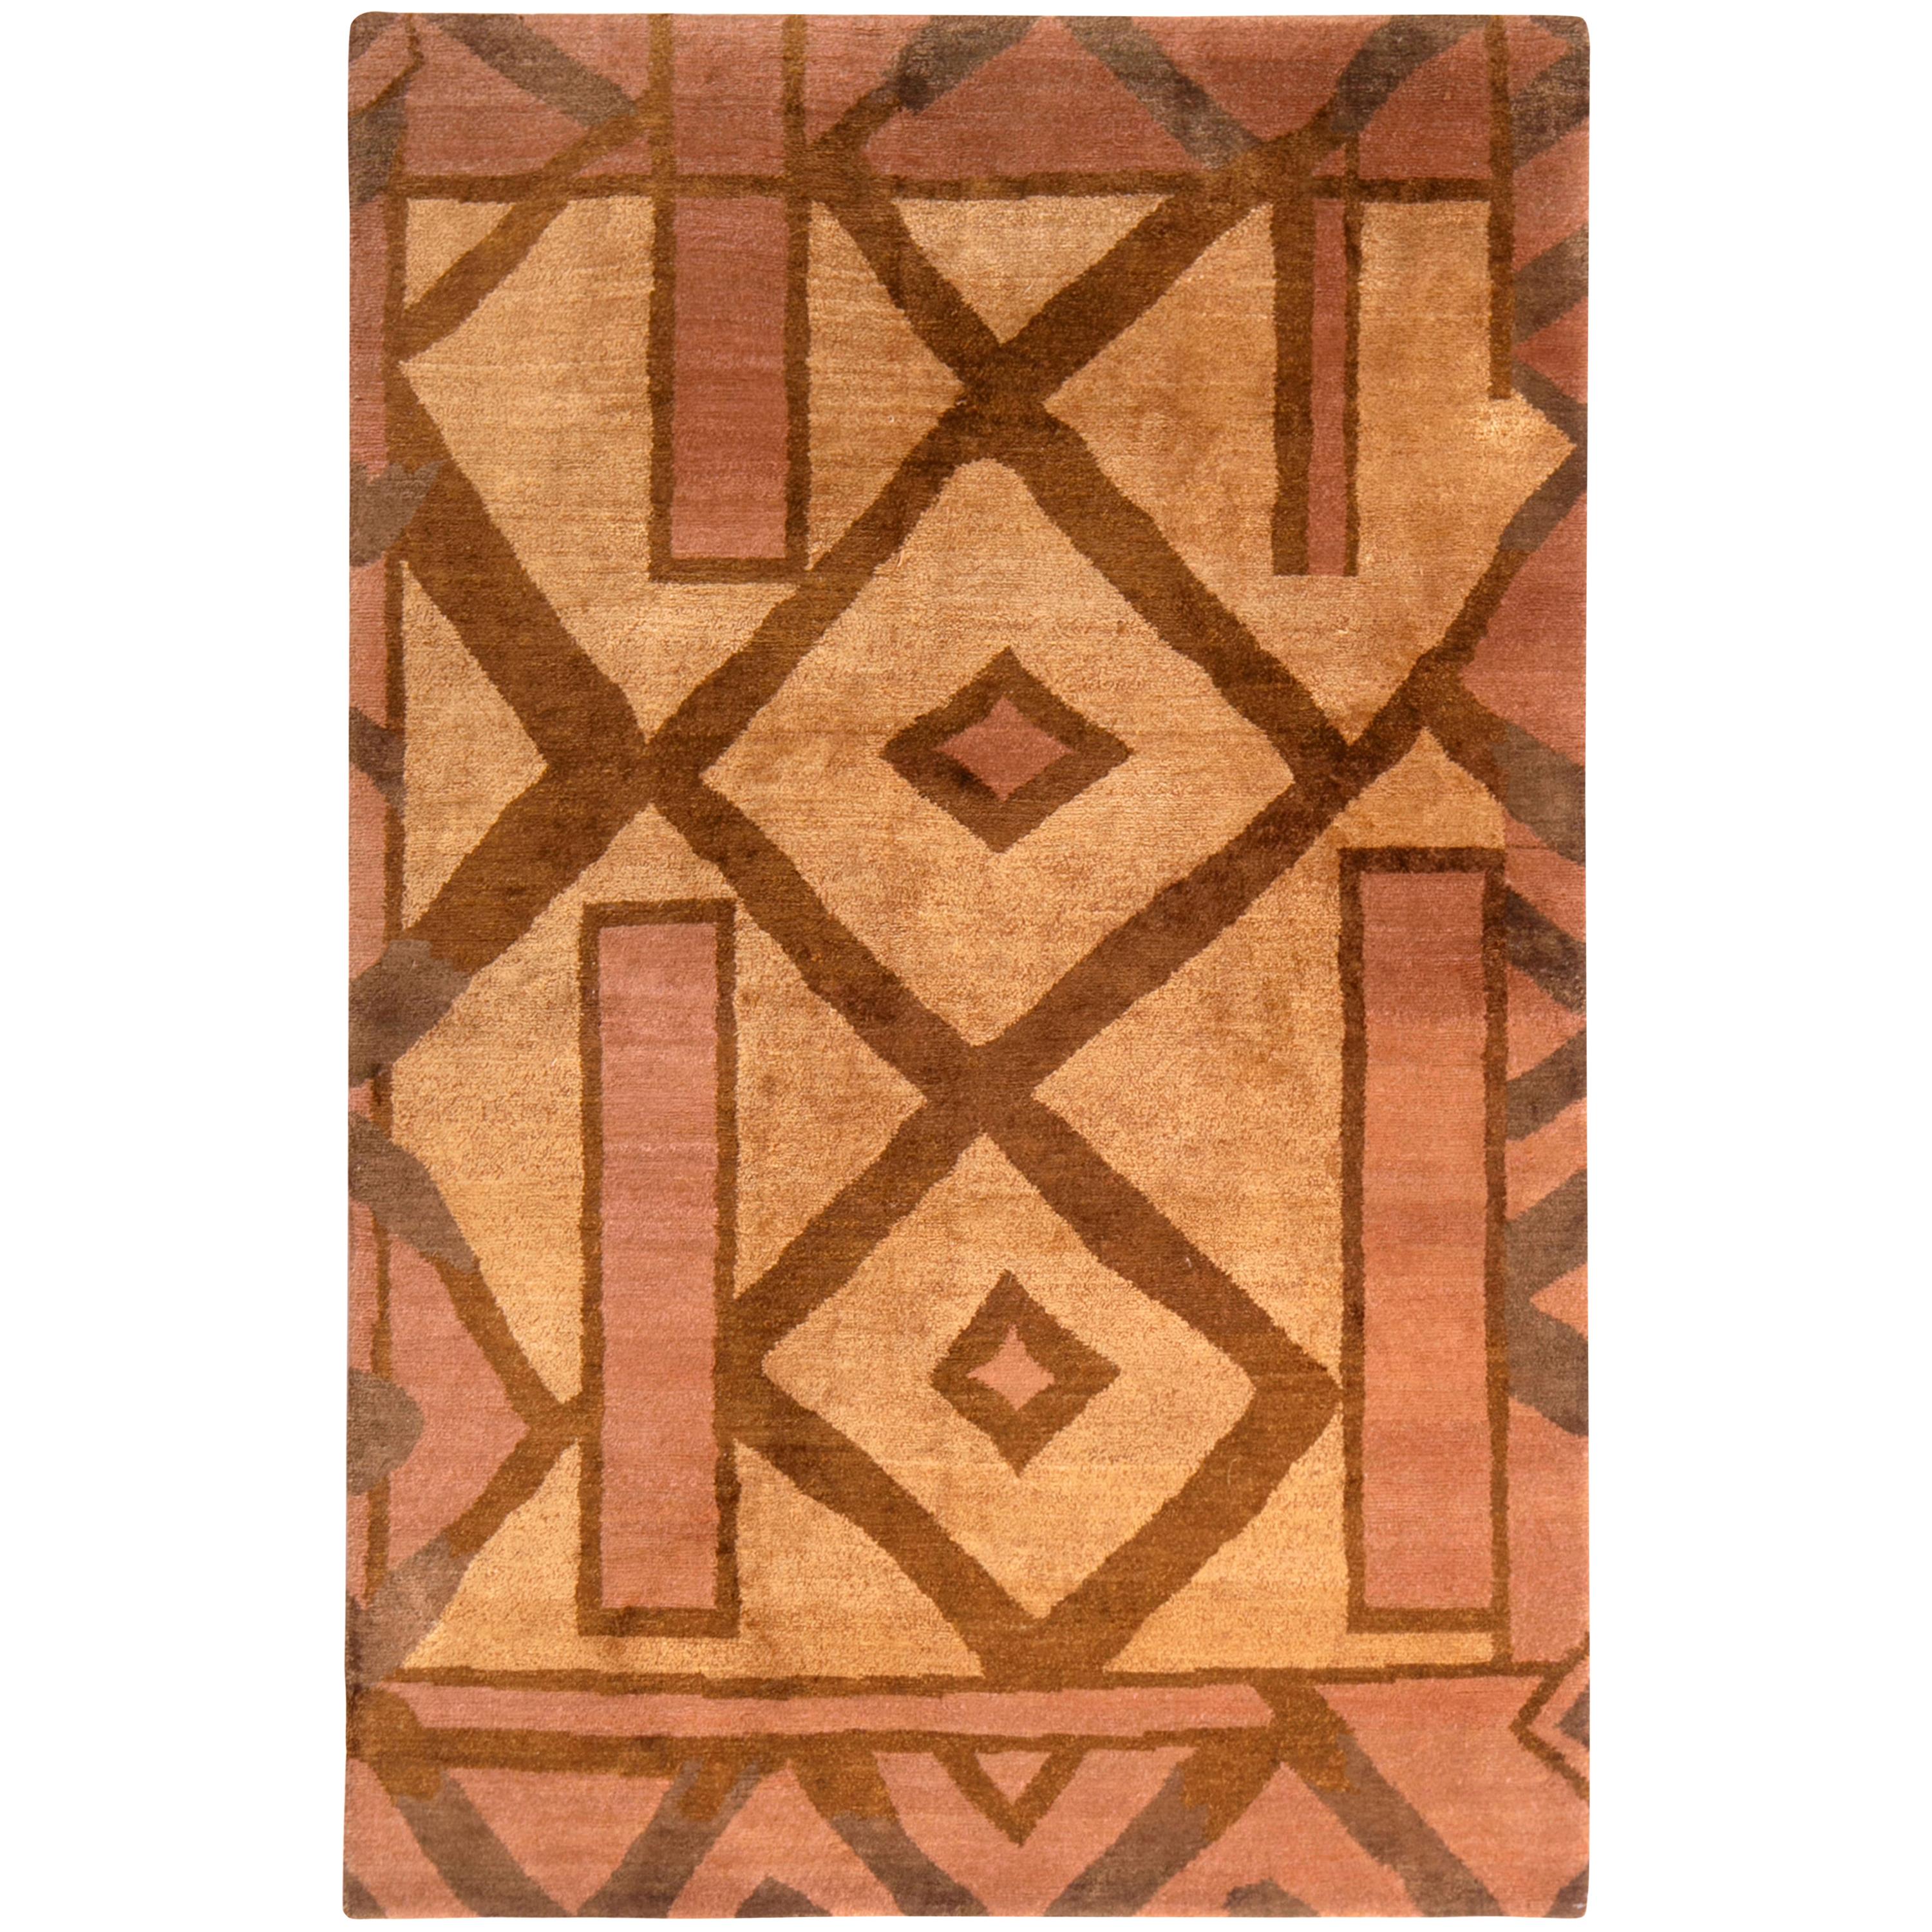 Teppich & Kelim-Teppich im kubistischen Stil Beige-Braun und Rosa Teppich aus Wolle und Seide